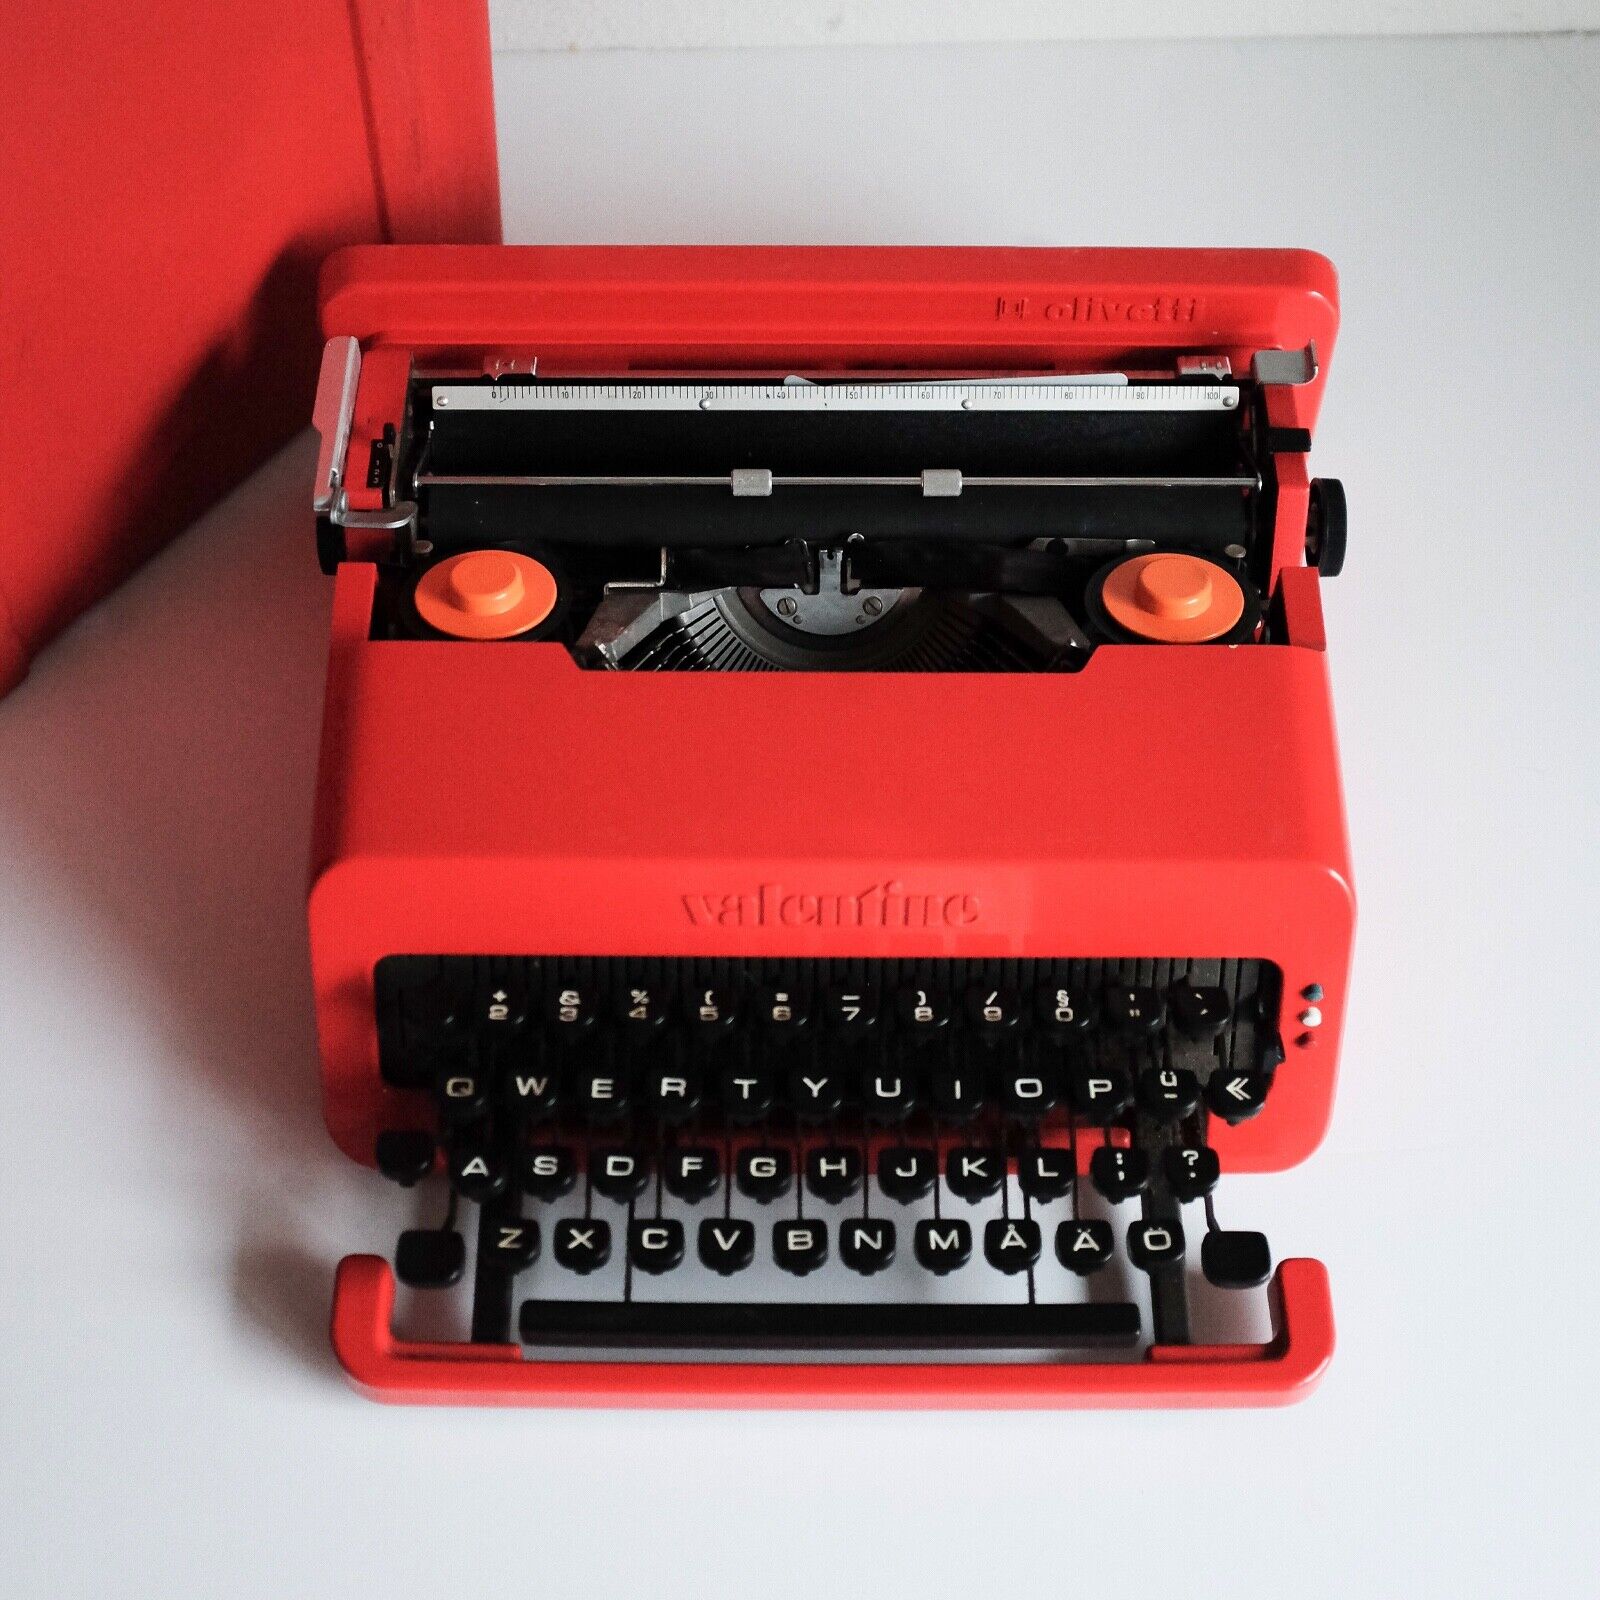 OLIVETTI VALENTINE S Typewriter - by Ettore Sottsass - Professionally Restored